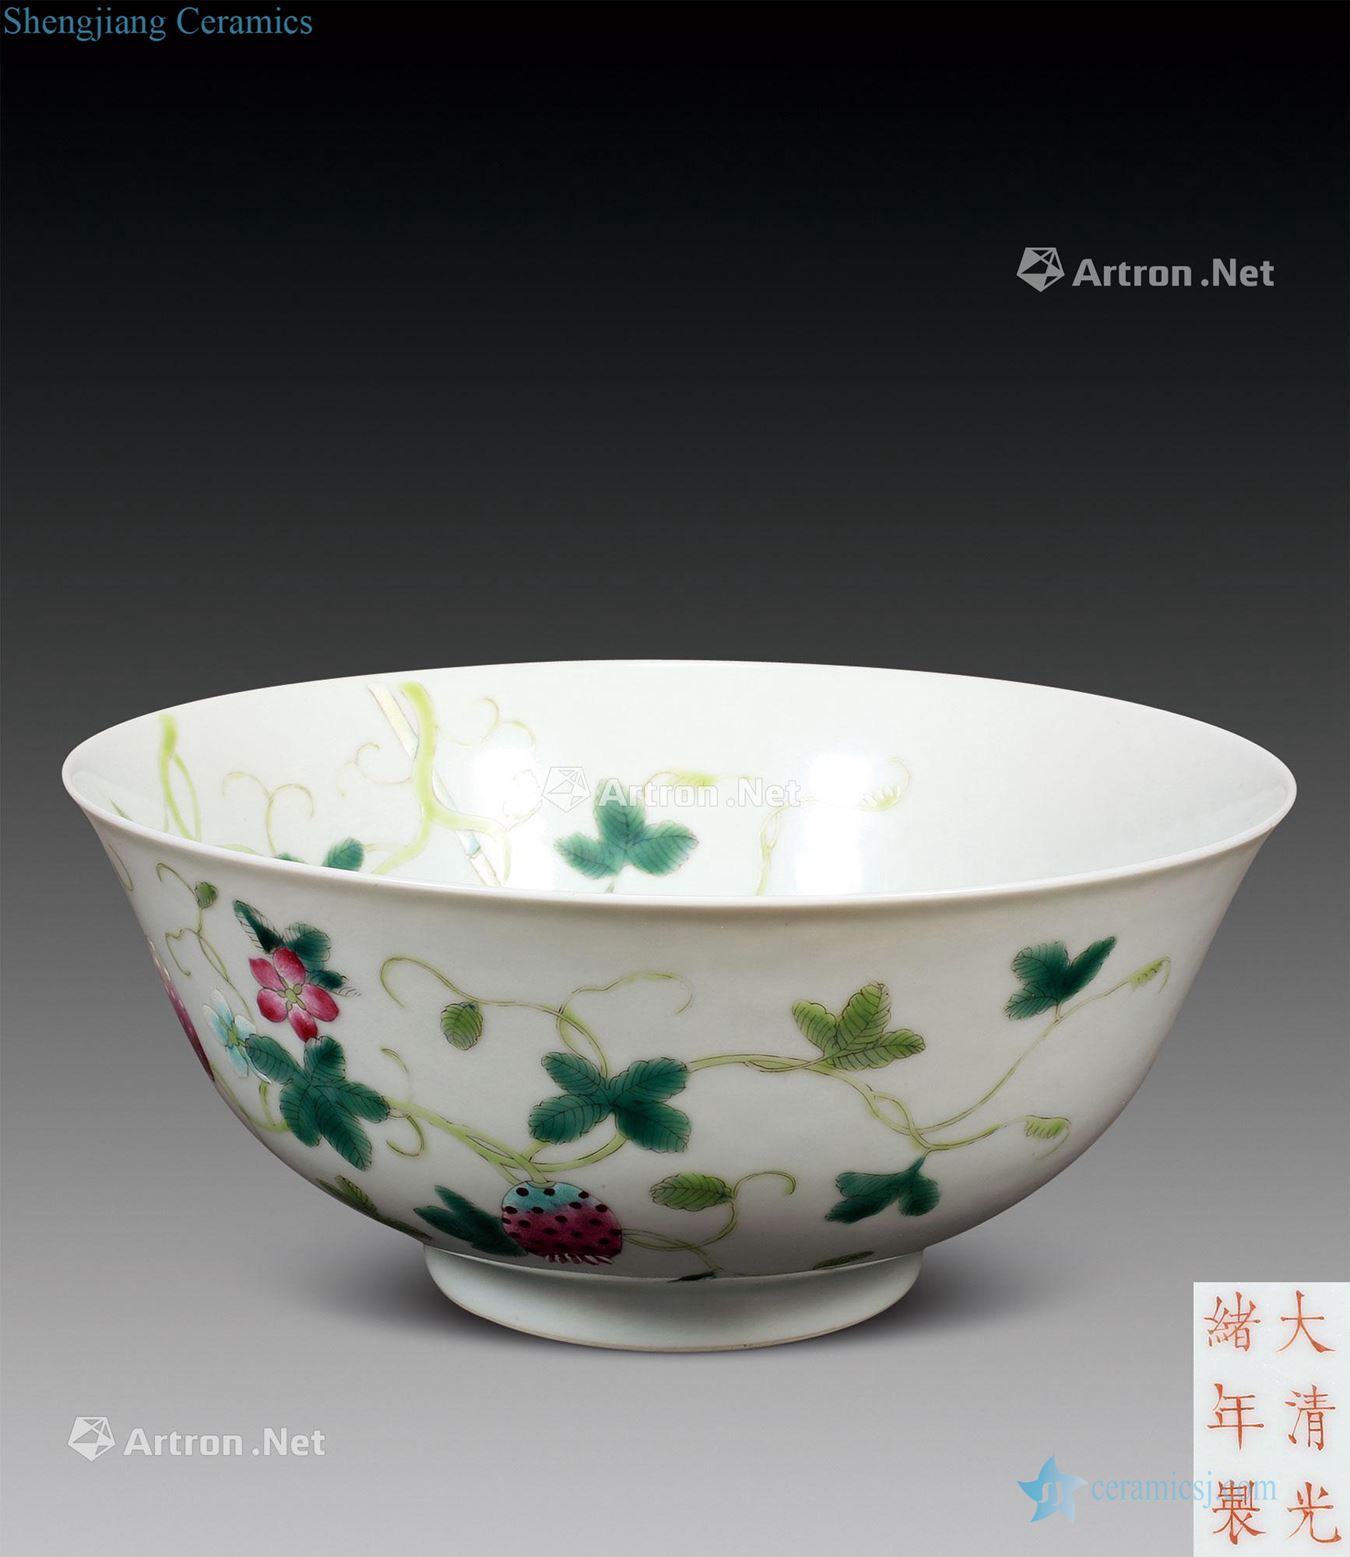 "Qing guangxu reign of qing emperor guangxu years" model of pastel sanduo green-splashed bowls